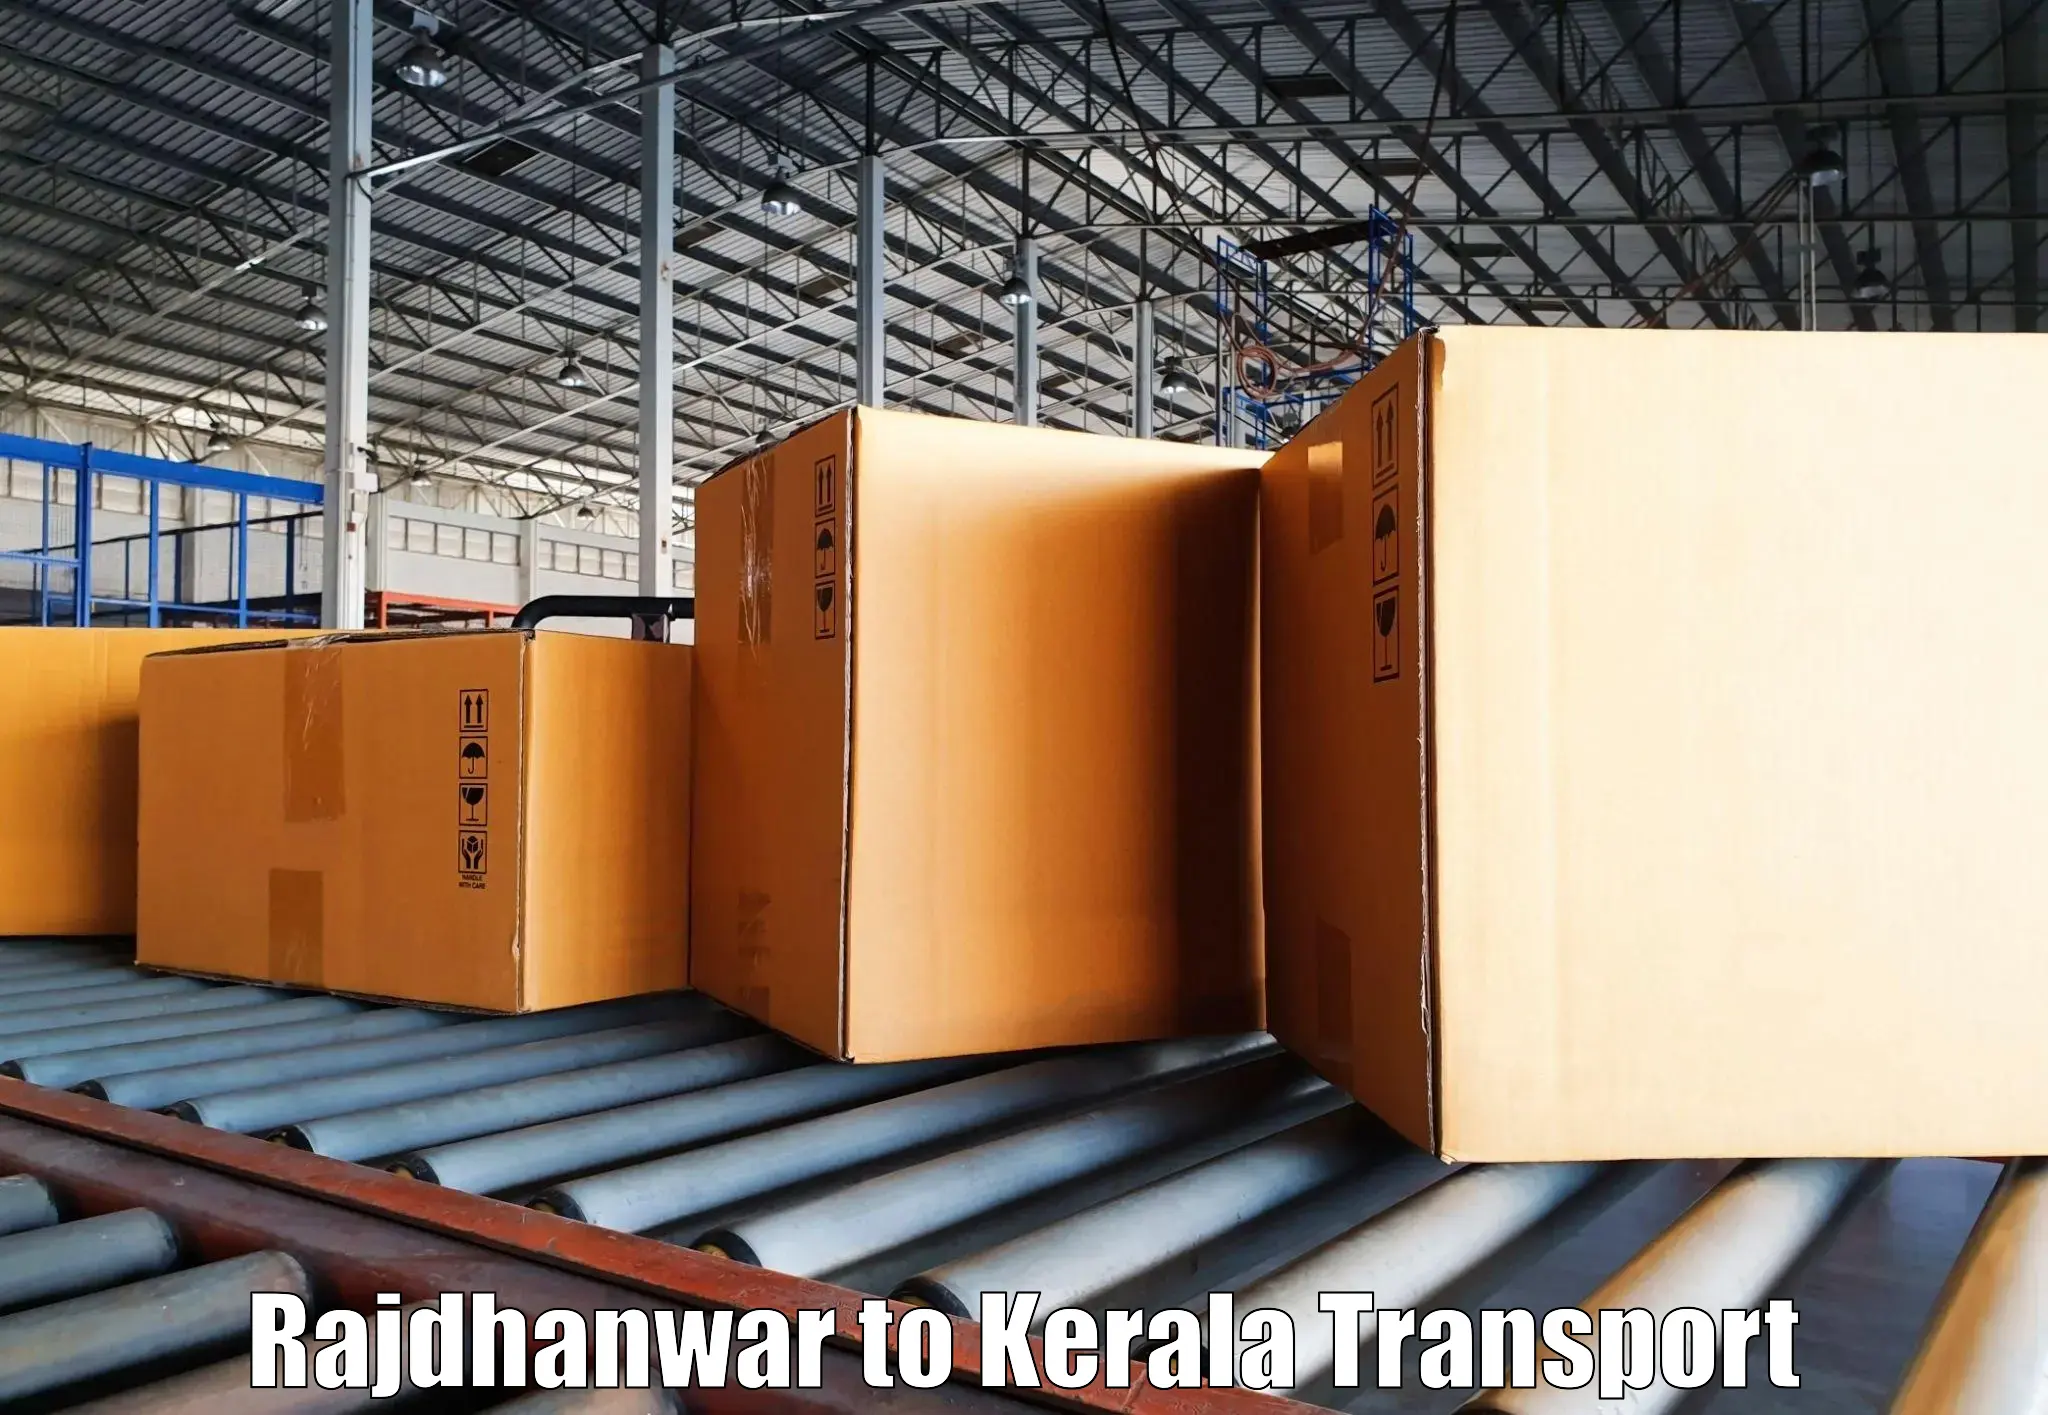 Daily transport service Rajdhanwar to Thrissur